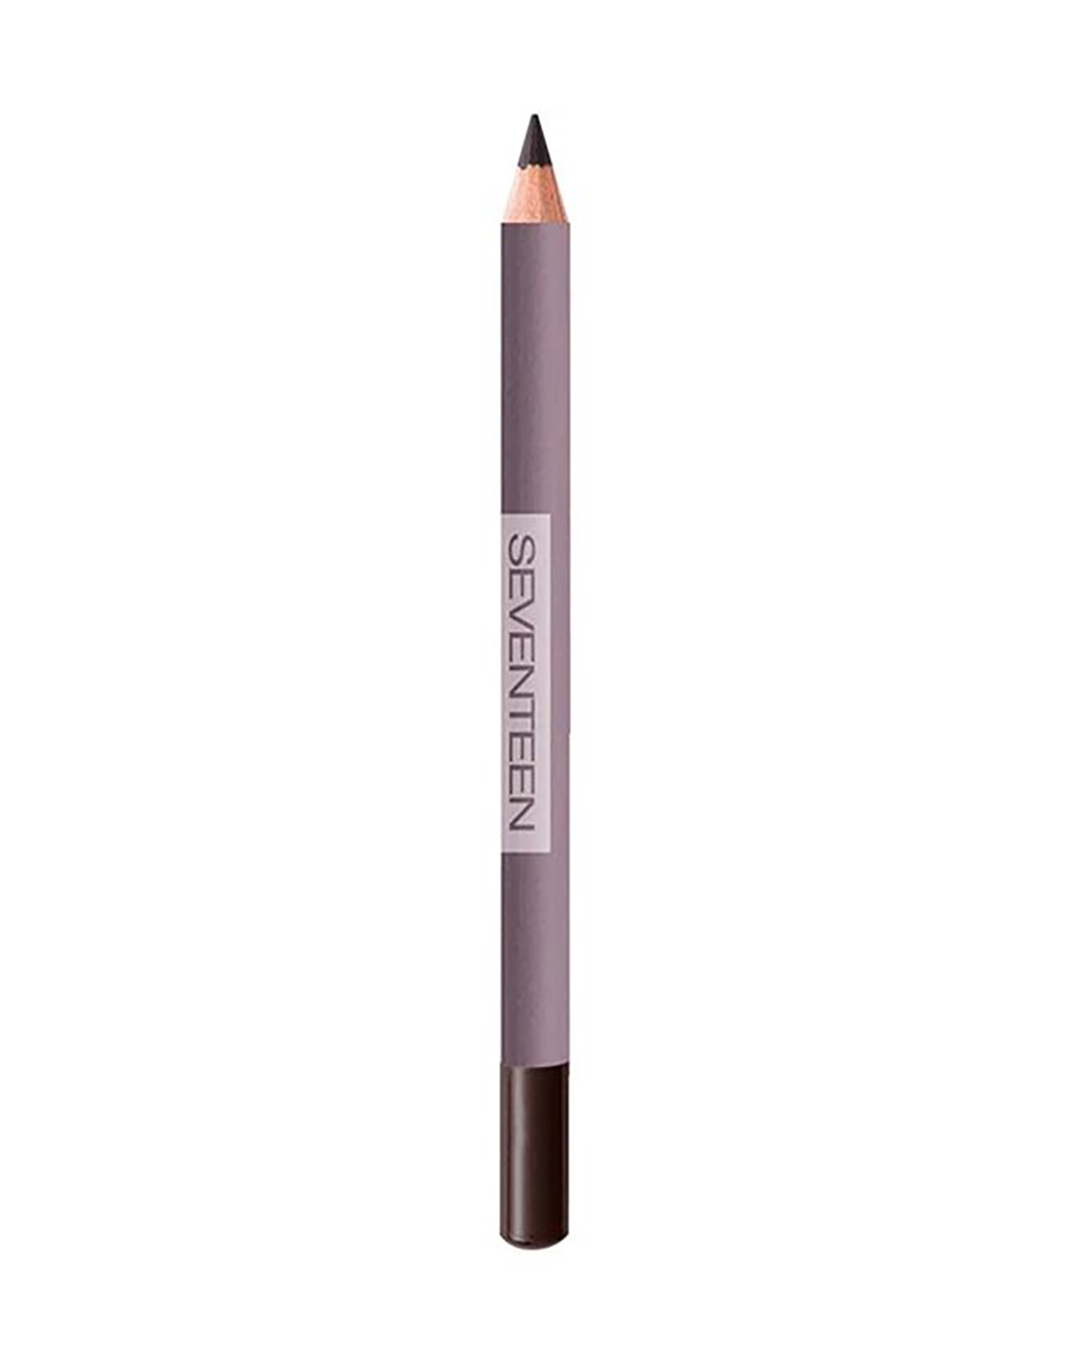 Seventeen Longstay Eye Shaper Pencil